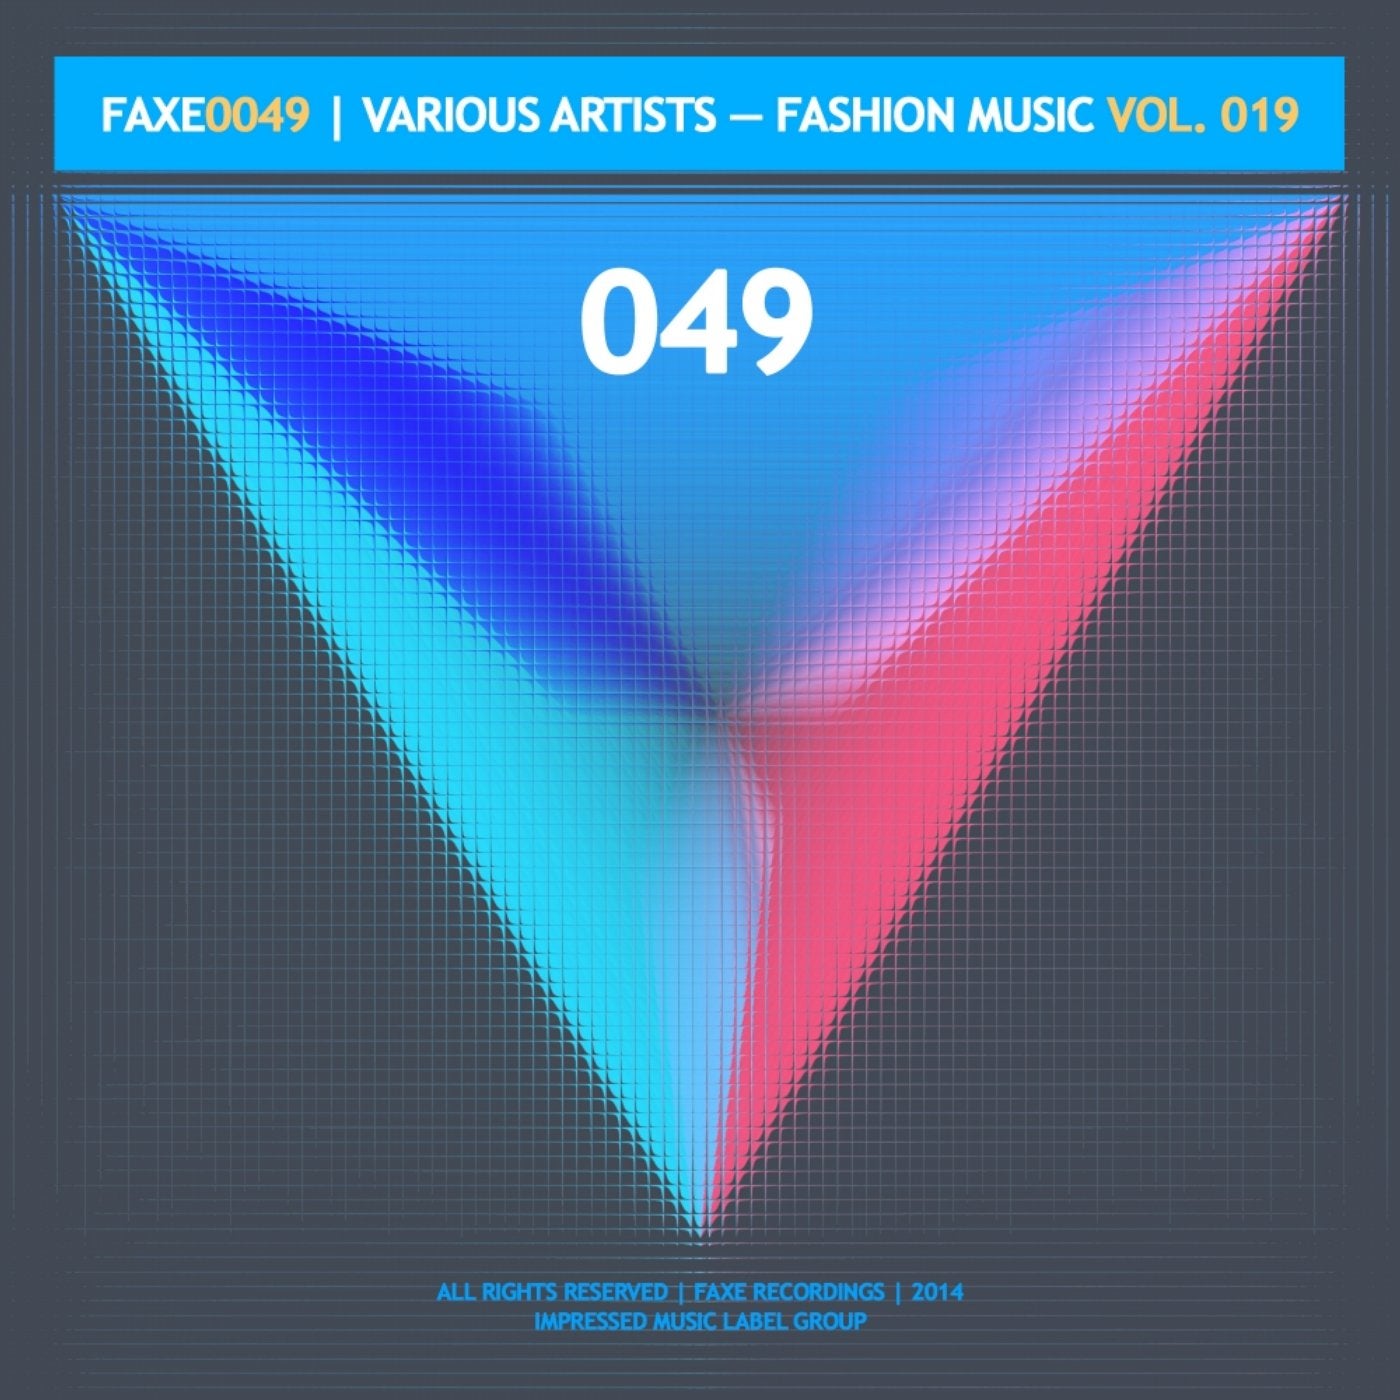 Fashion Music, Vol. 019